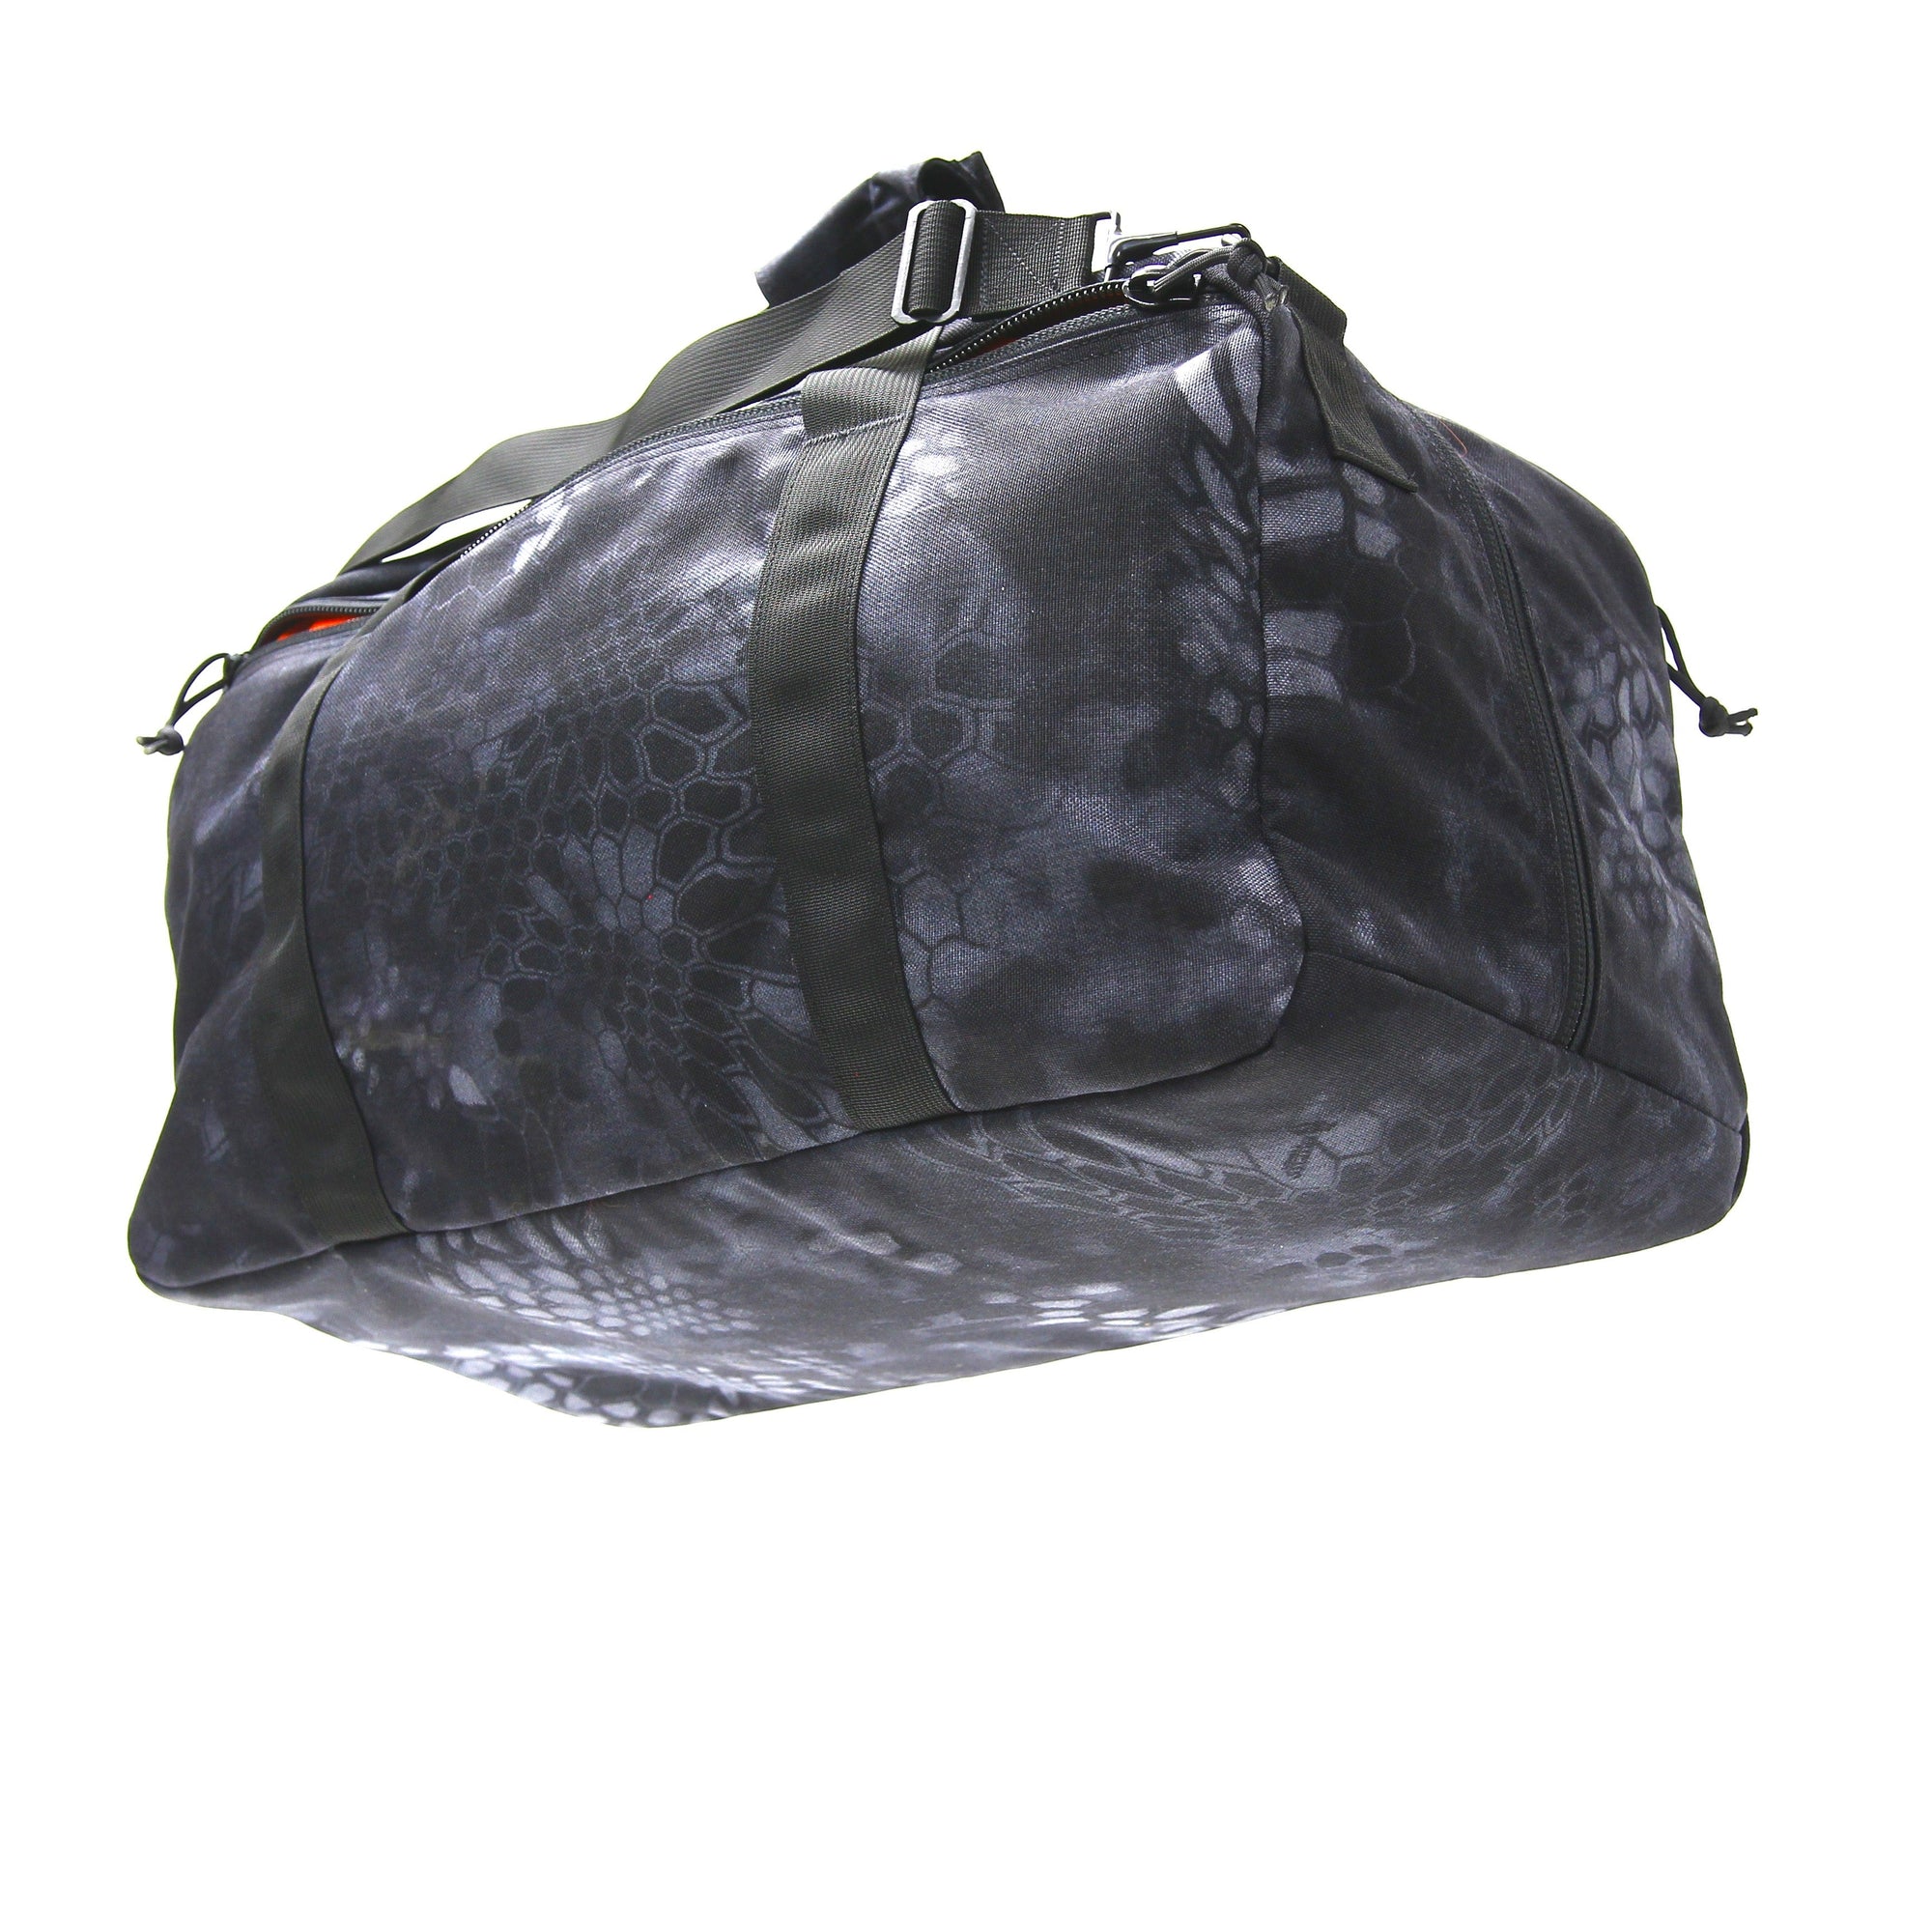 Louis Vuitton Medium Duffle Bags for Men for sale